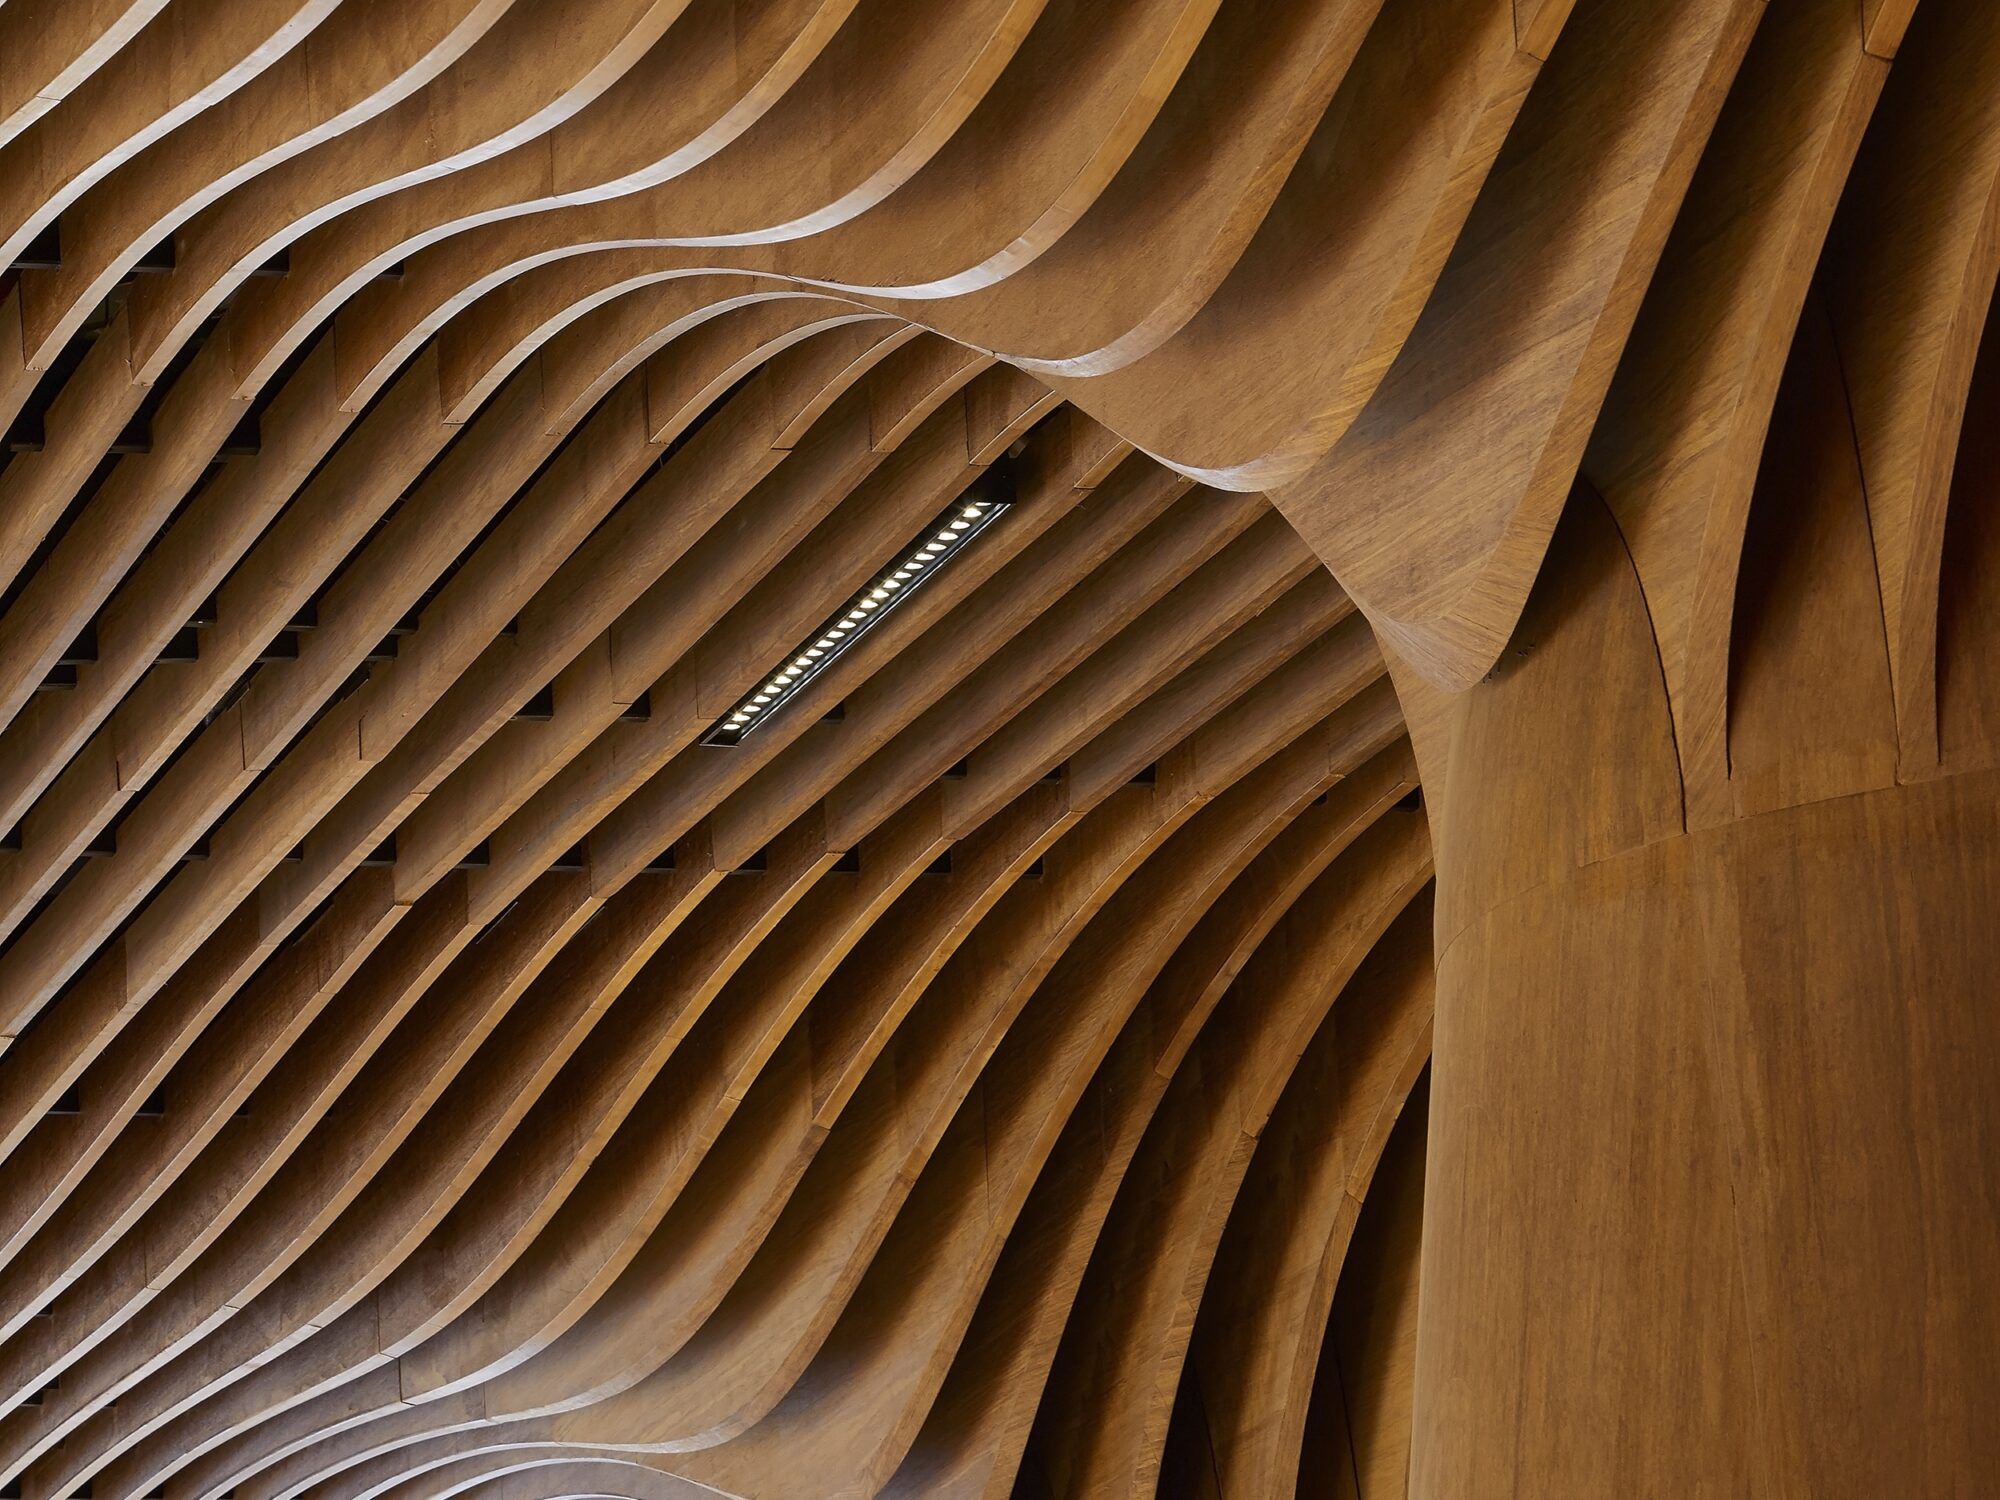 Panel decorativo de madera - Todos los fabricantes de la arquitectura y del  design